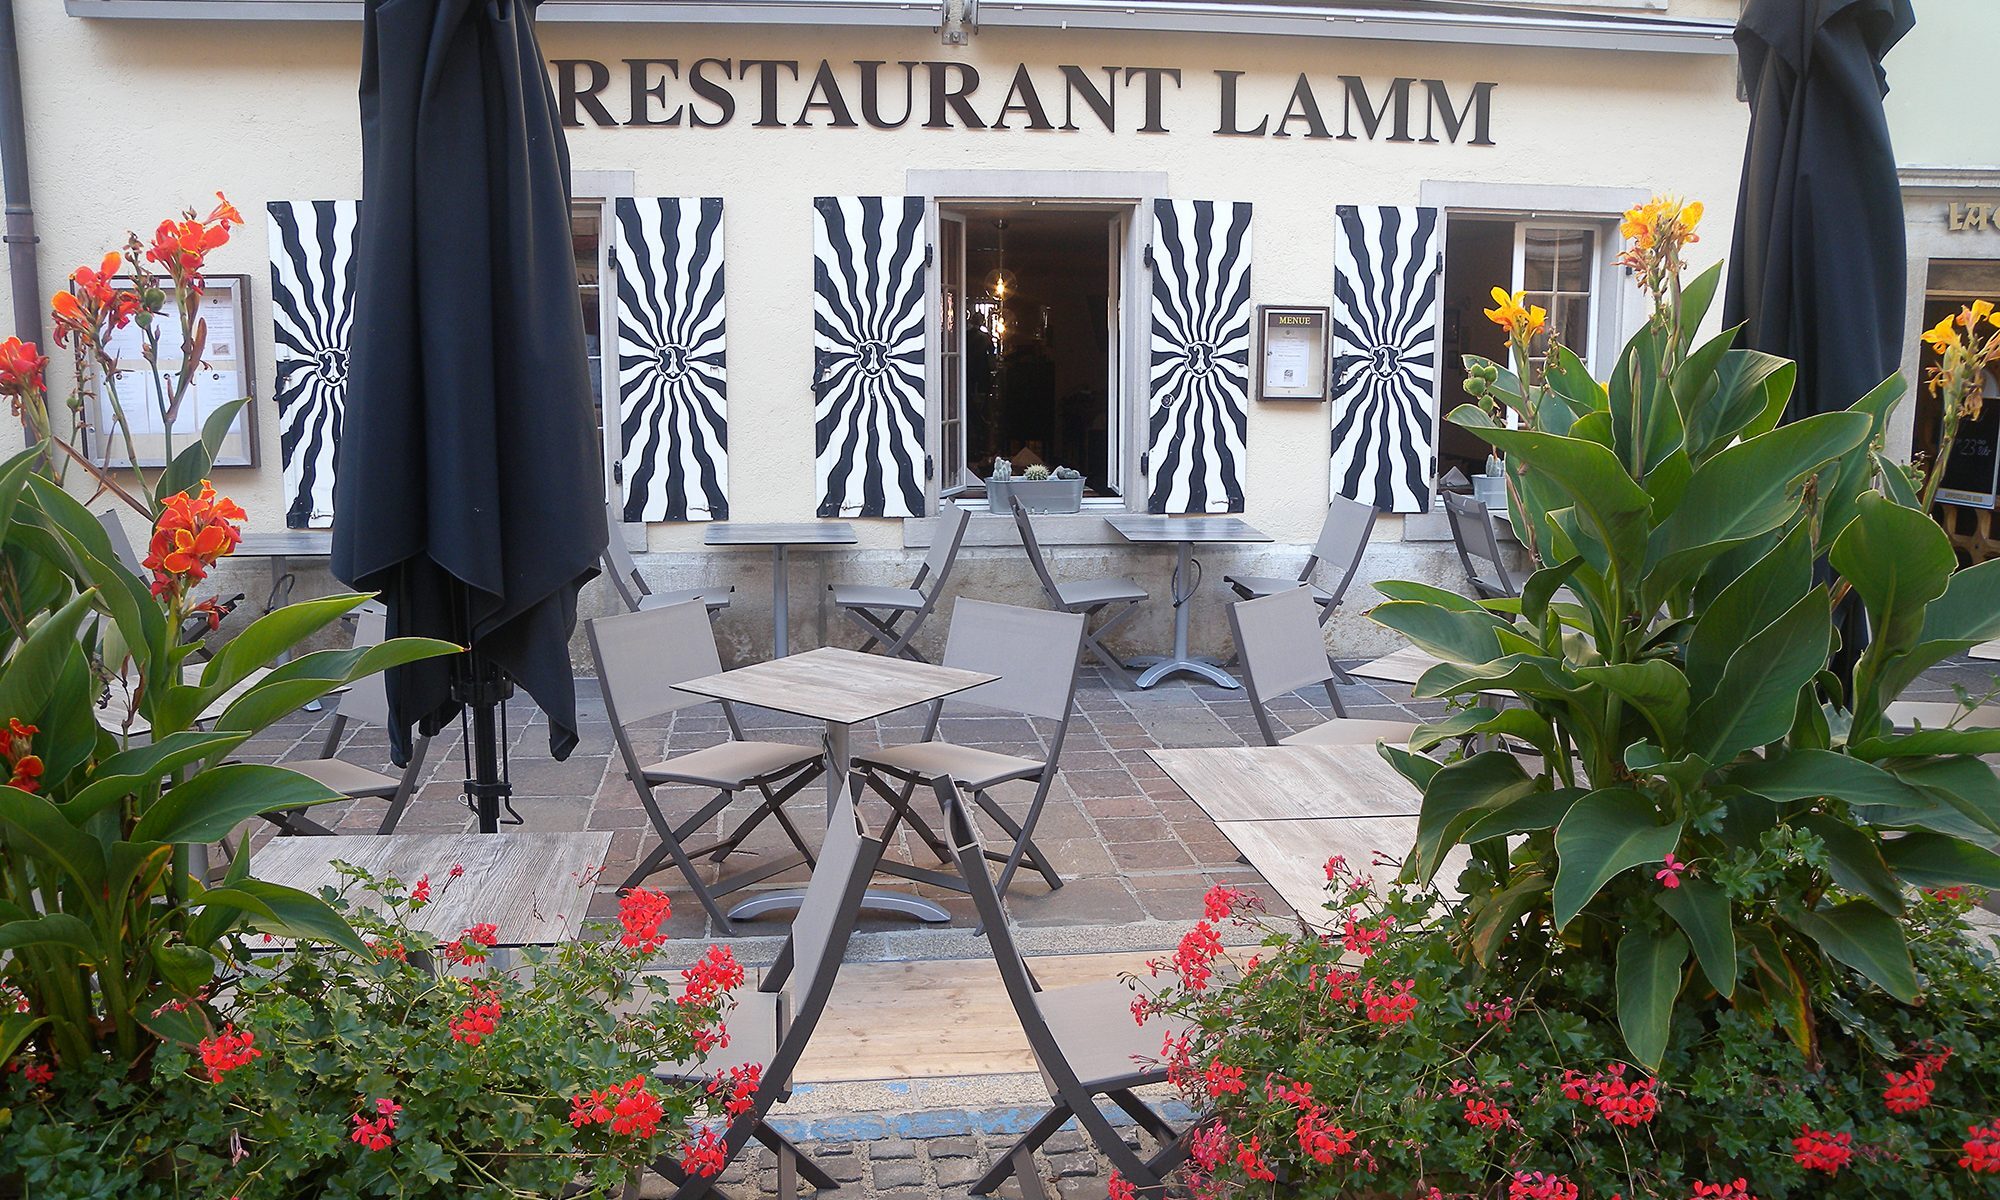 Restaurant Lamm Laufen